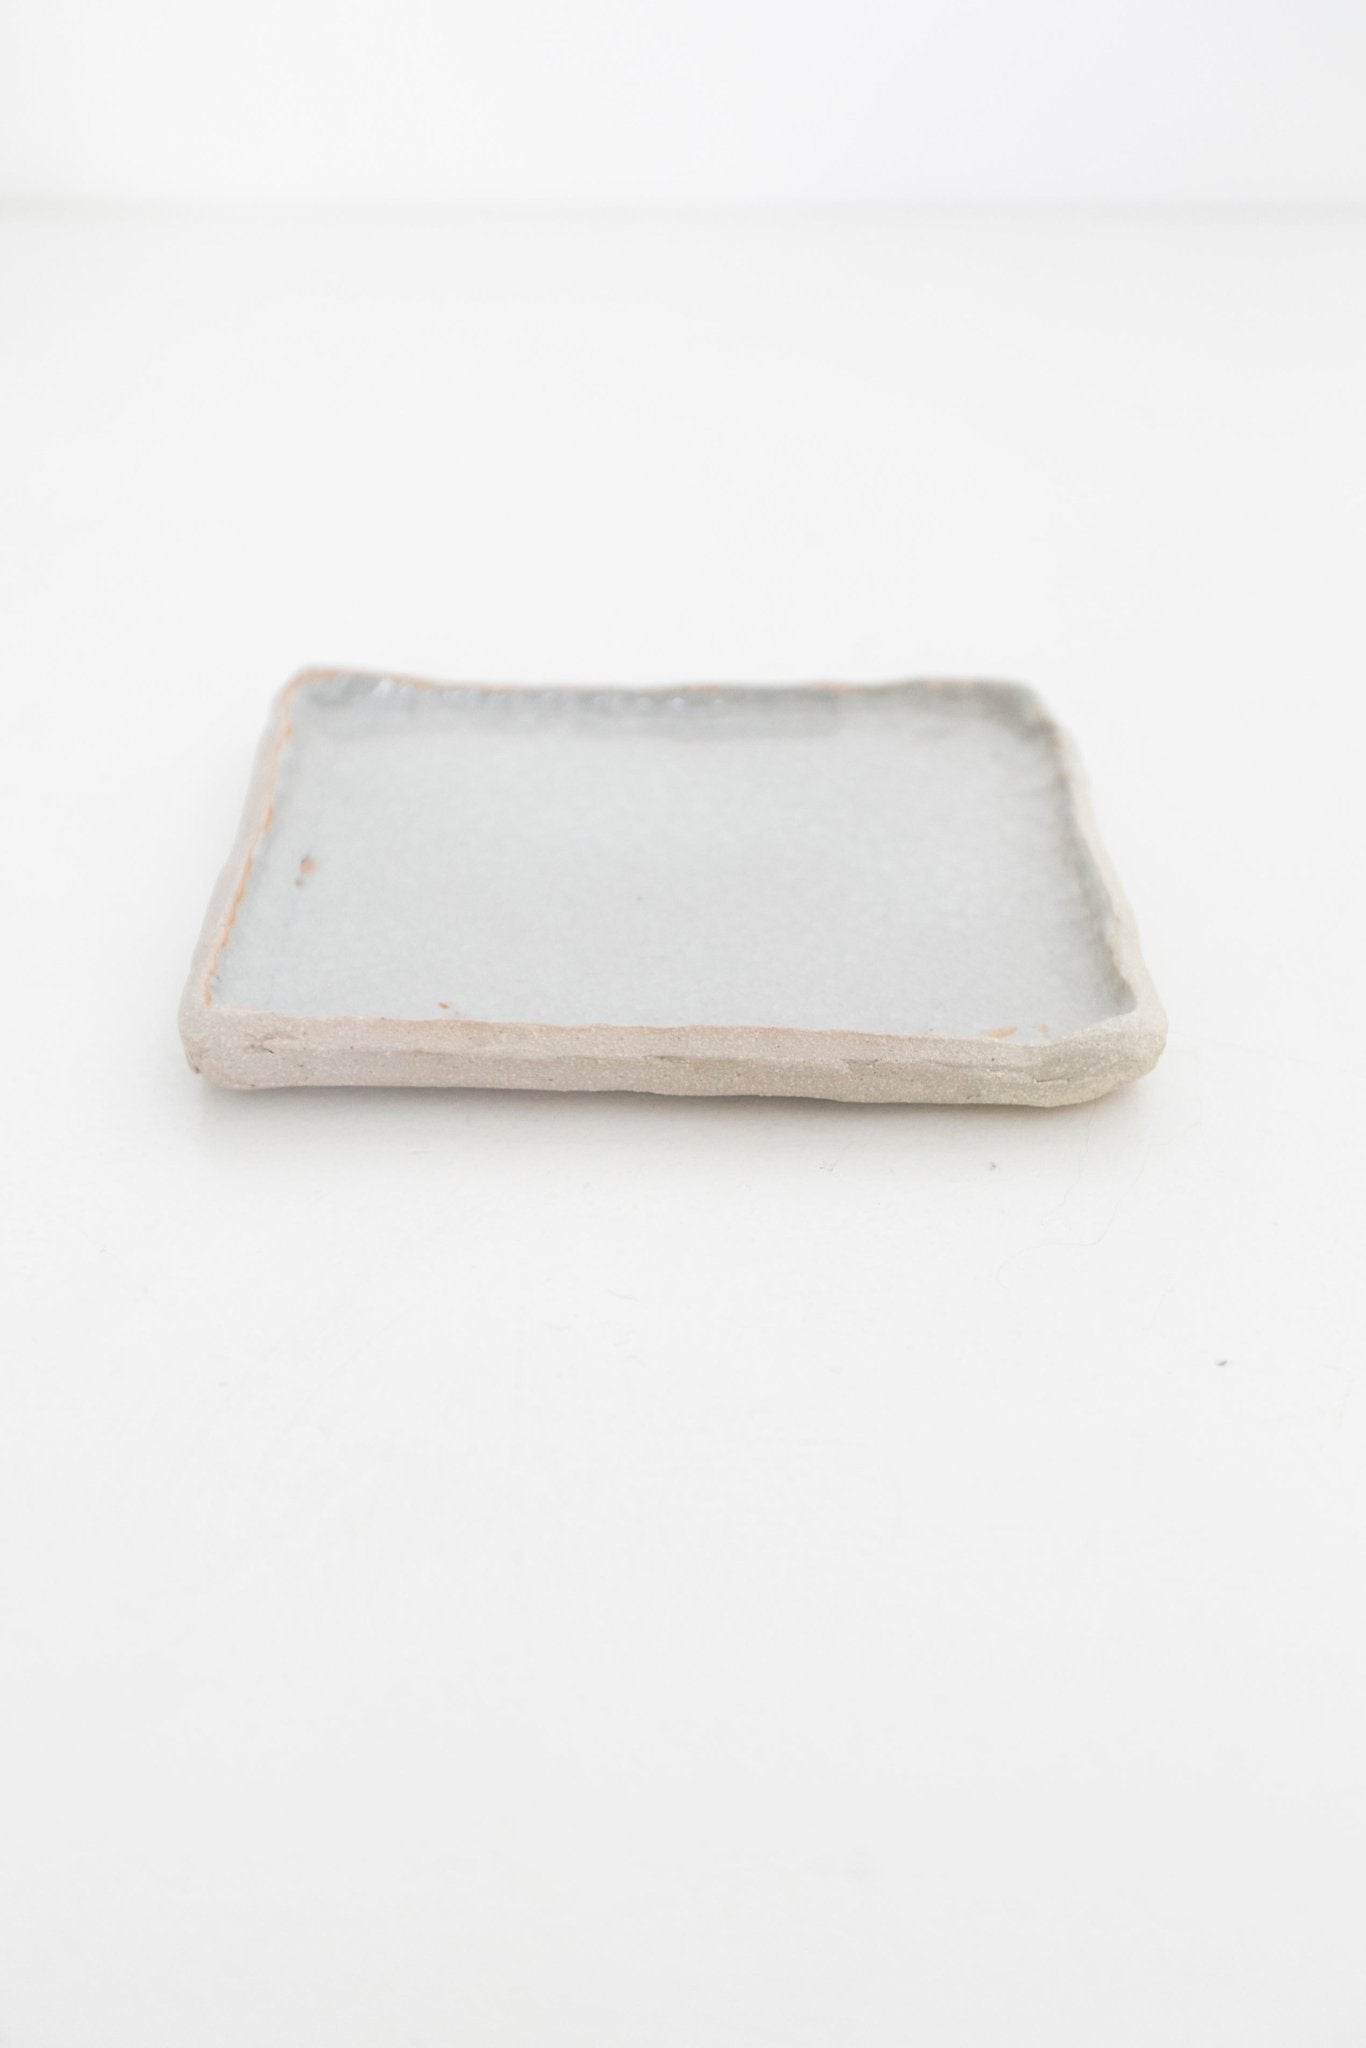 Aburi Ceramics - Square Plate - Ensemble Studios